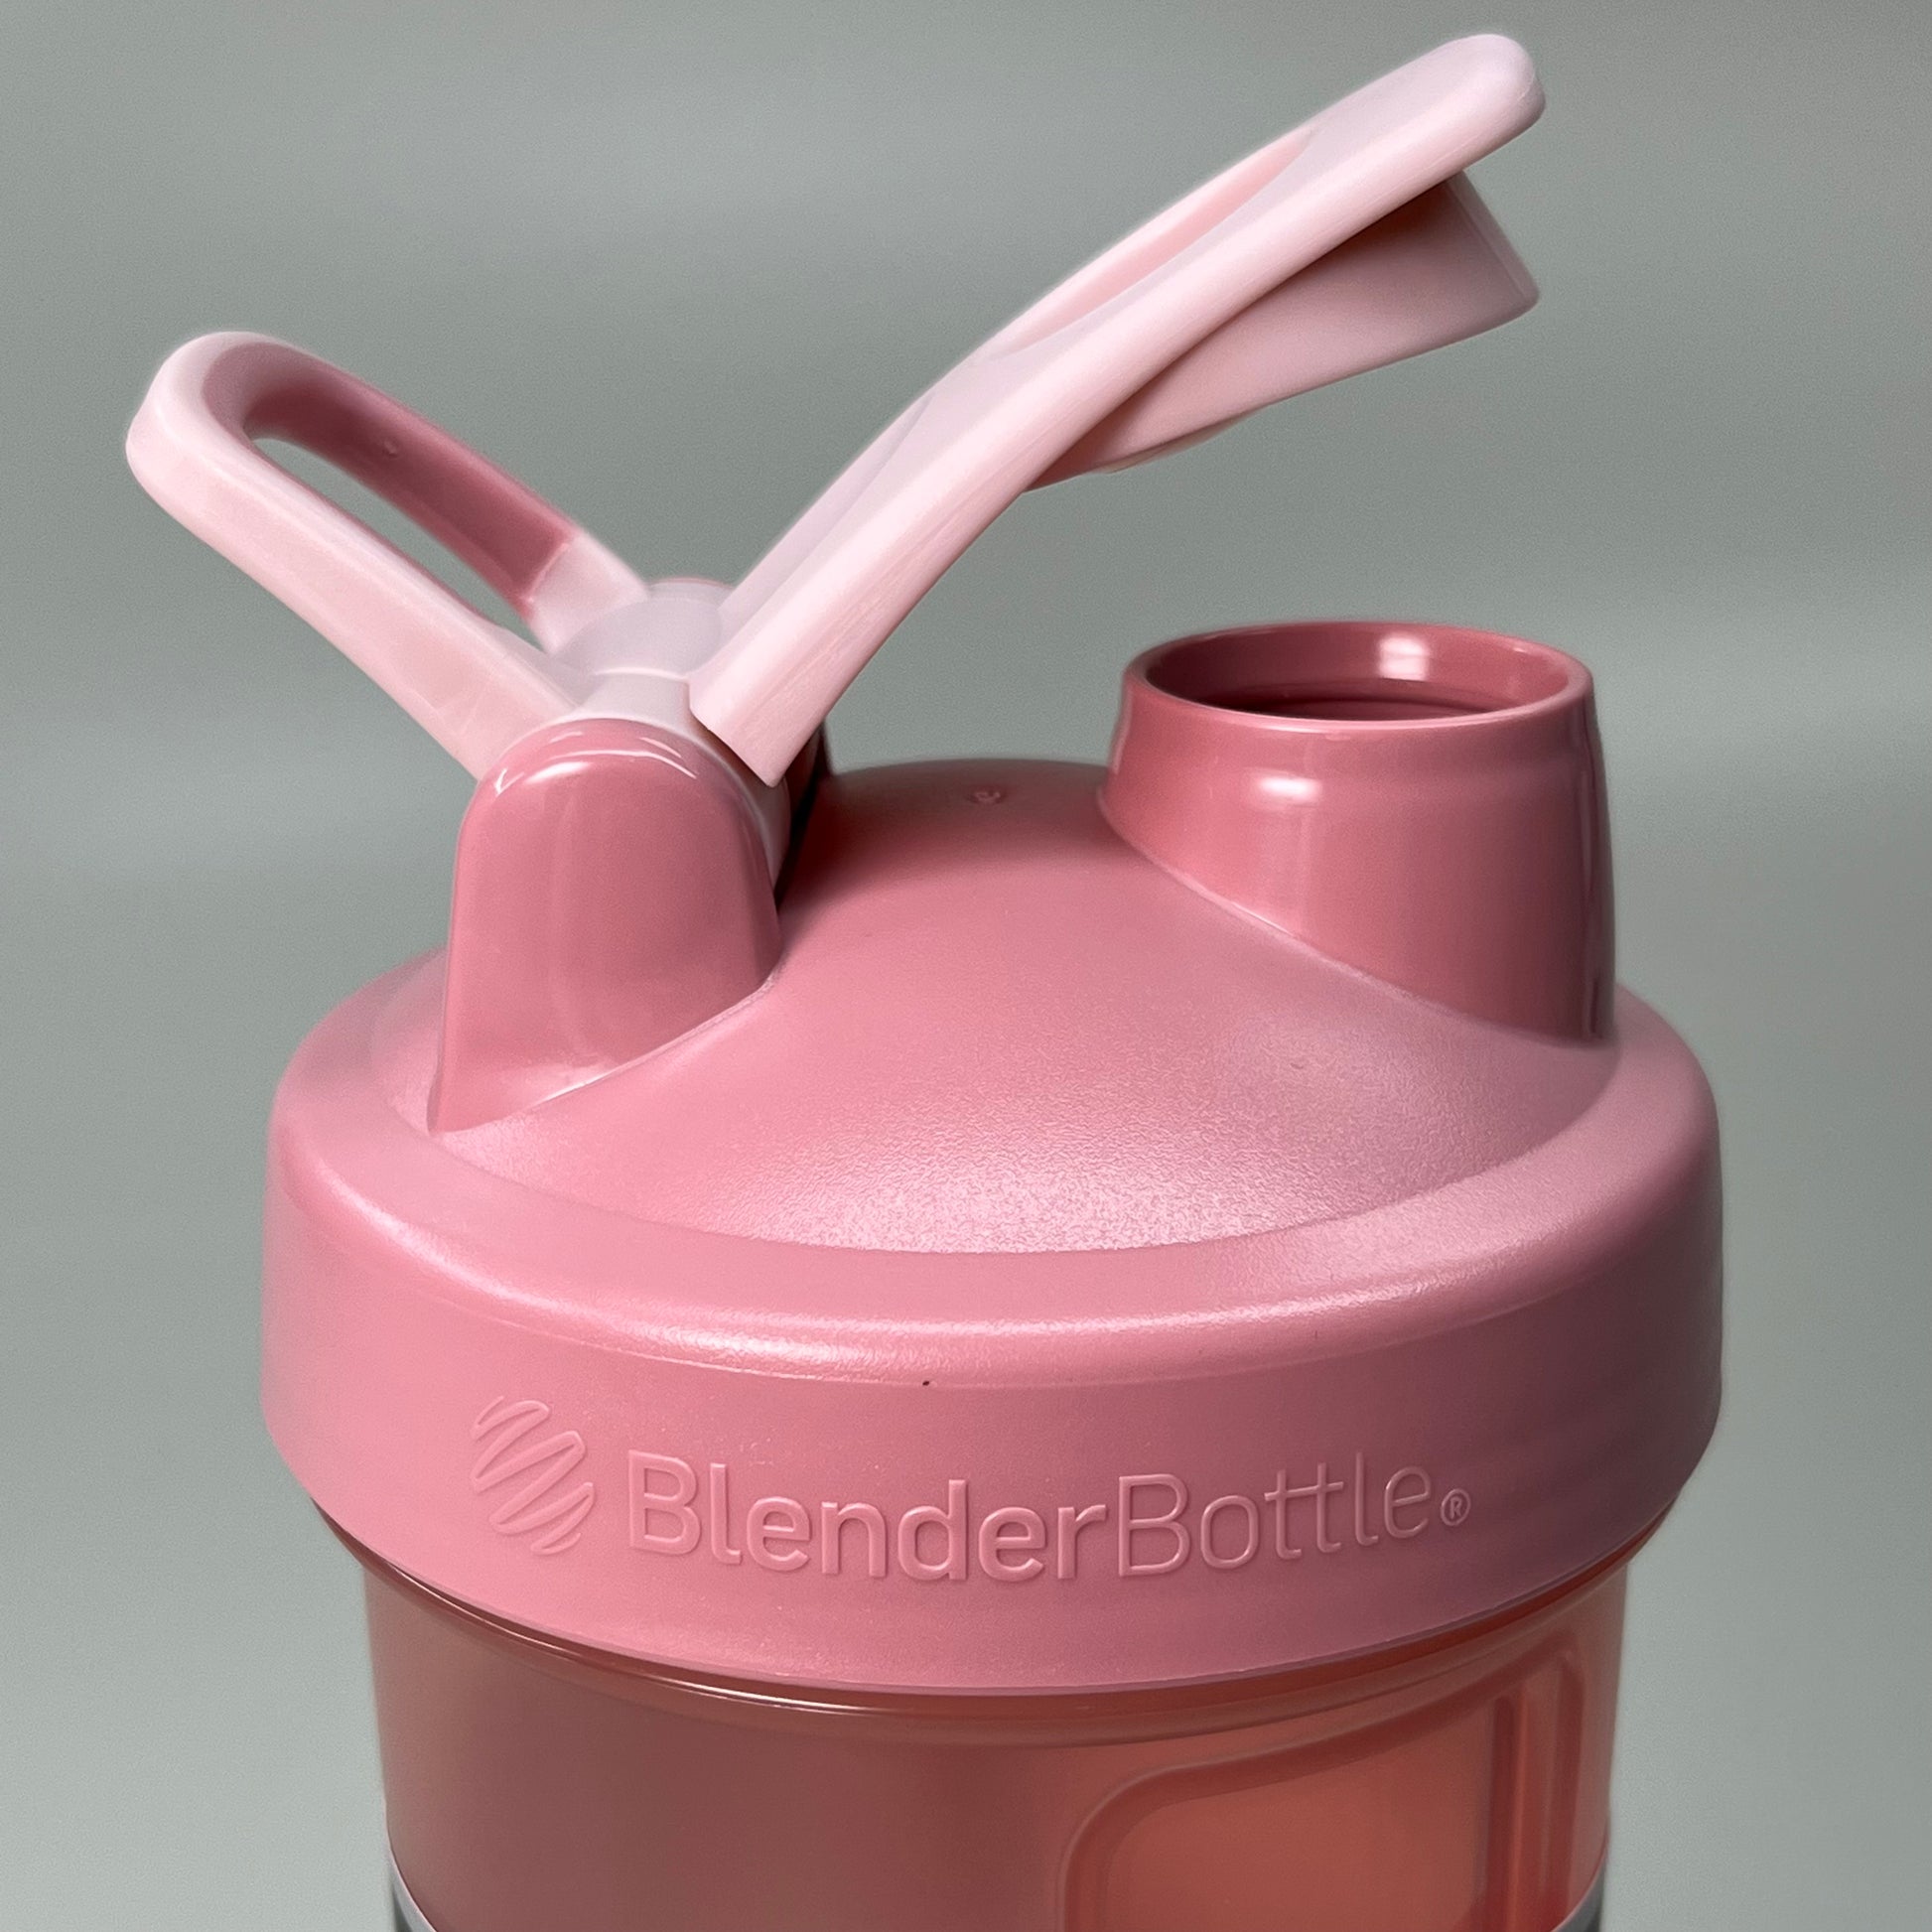 BlenderBottle Classic V2 Just For Fun – BlenderBottle SEA